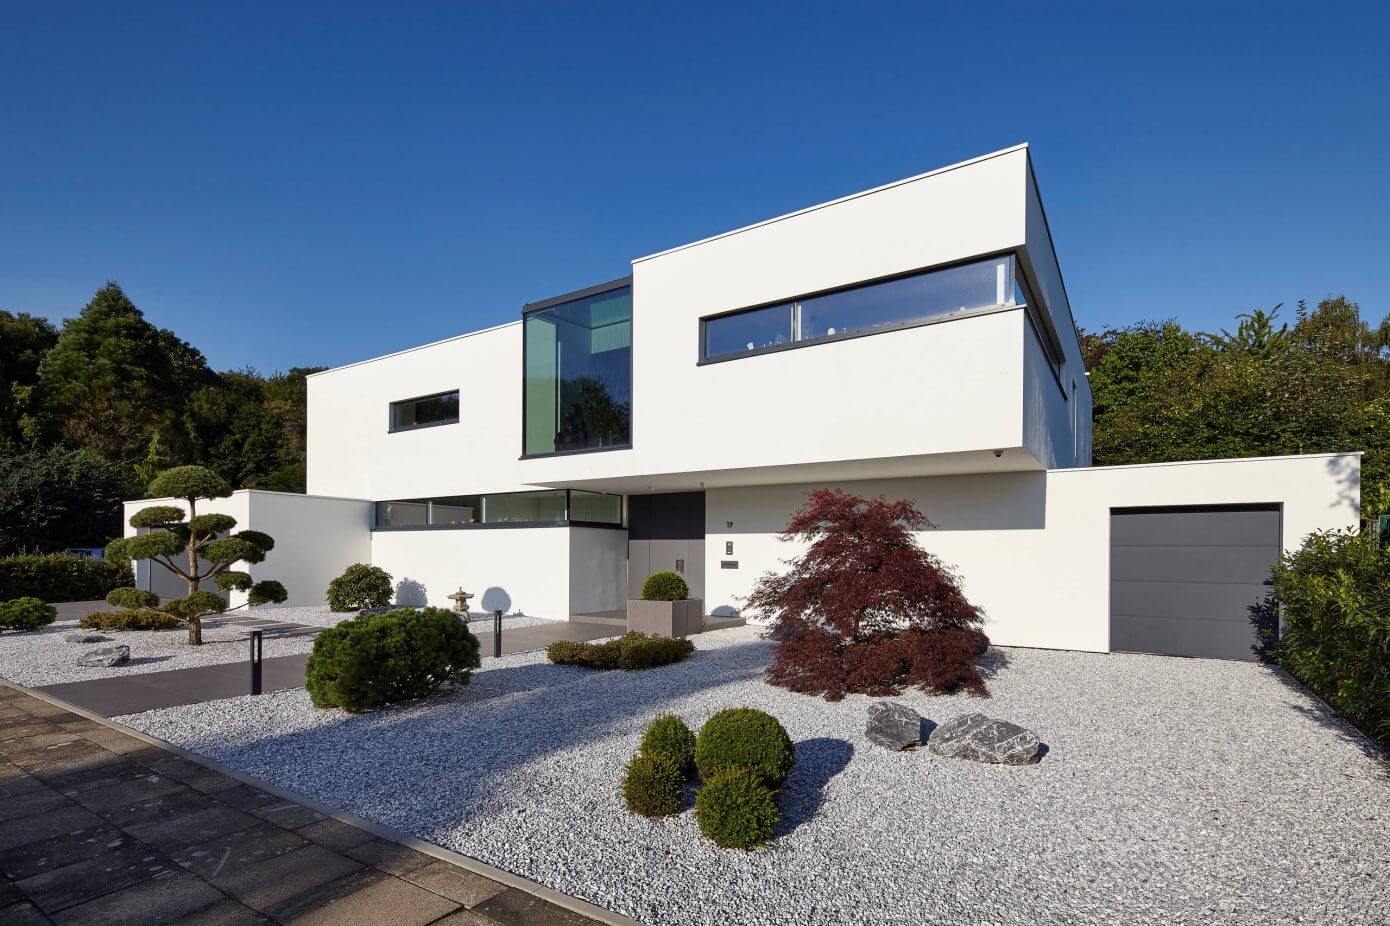 Villa in Dormagen by Falke Architekten